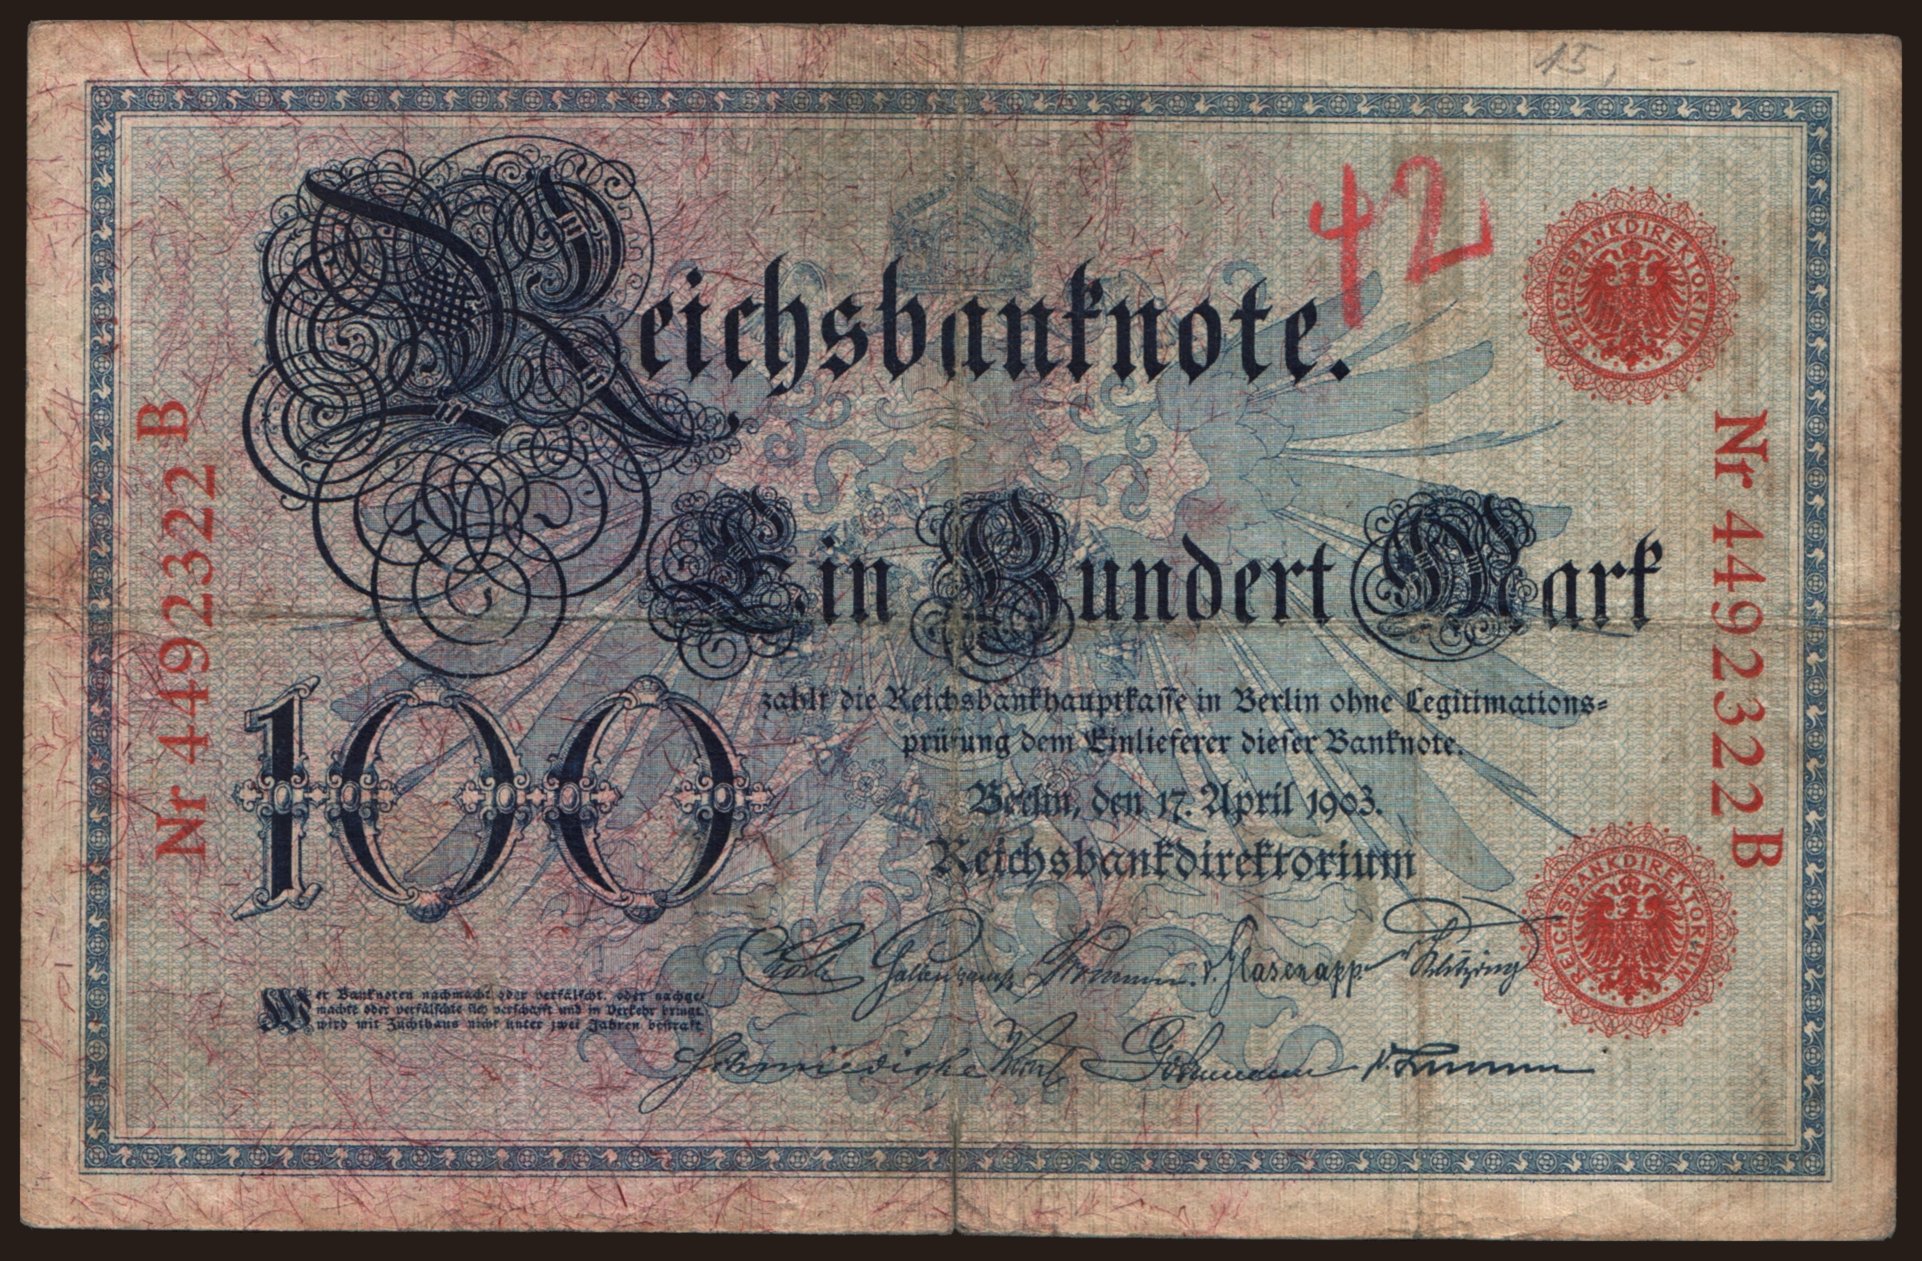 100 Mark, 1903